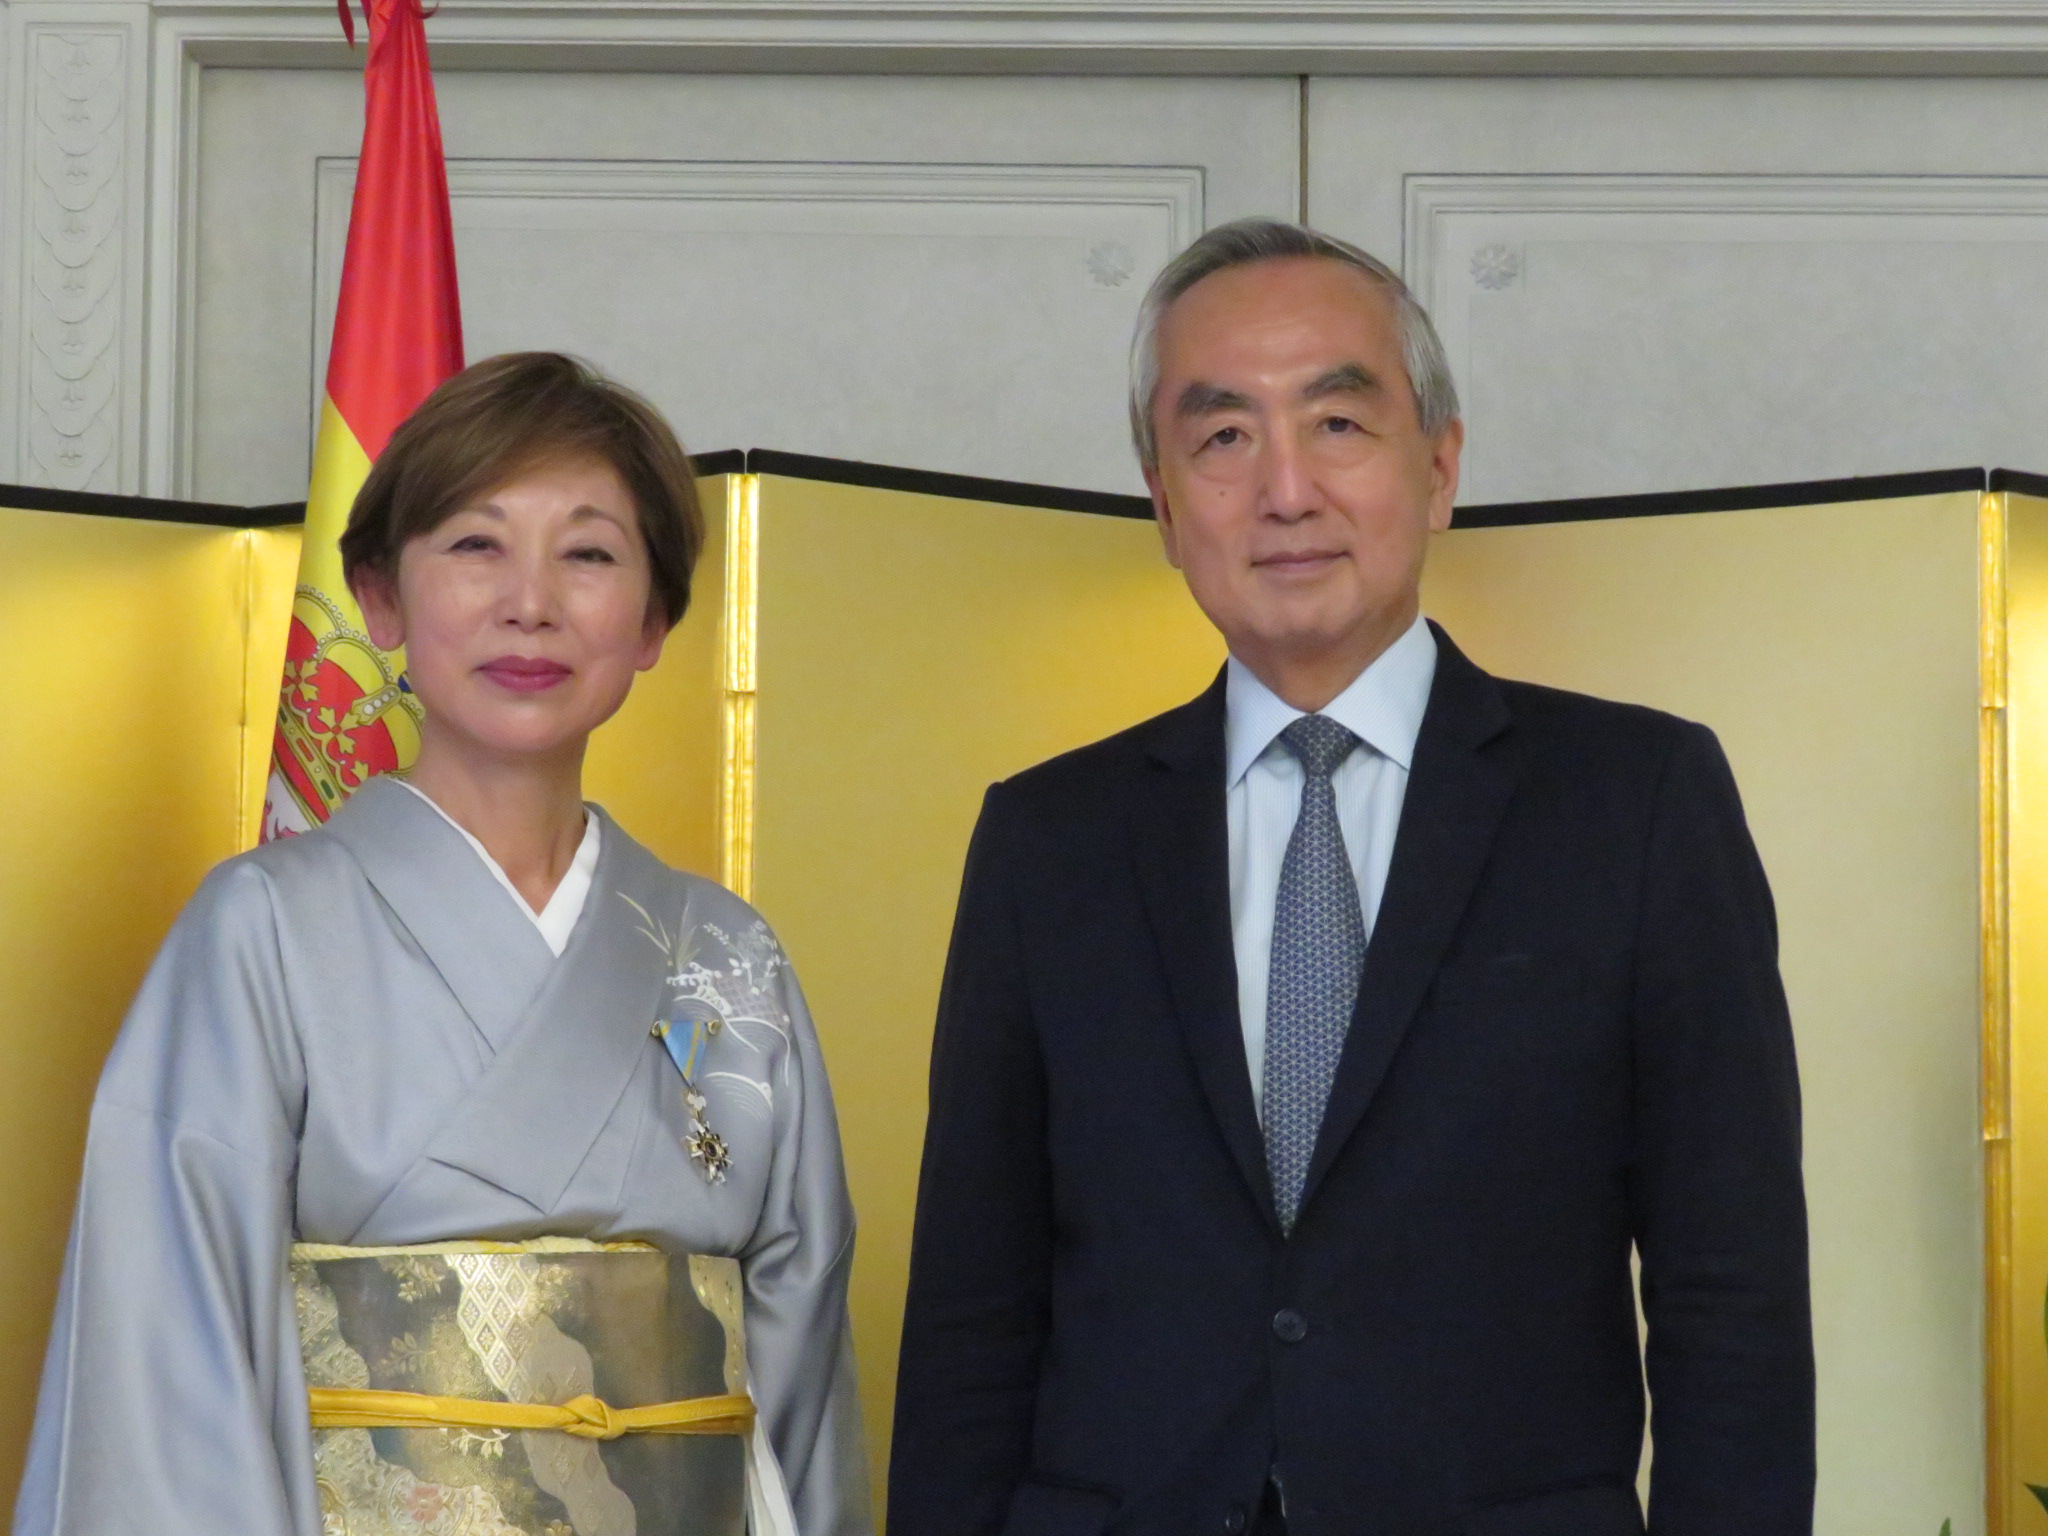 La profesora emérita Kayoko Takagi, junto al embajador de Japón en España Hiramatsu Kenji, tras recibir la condecoración. / Foto: Embajada de Japón